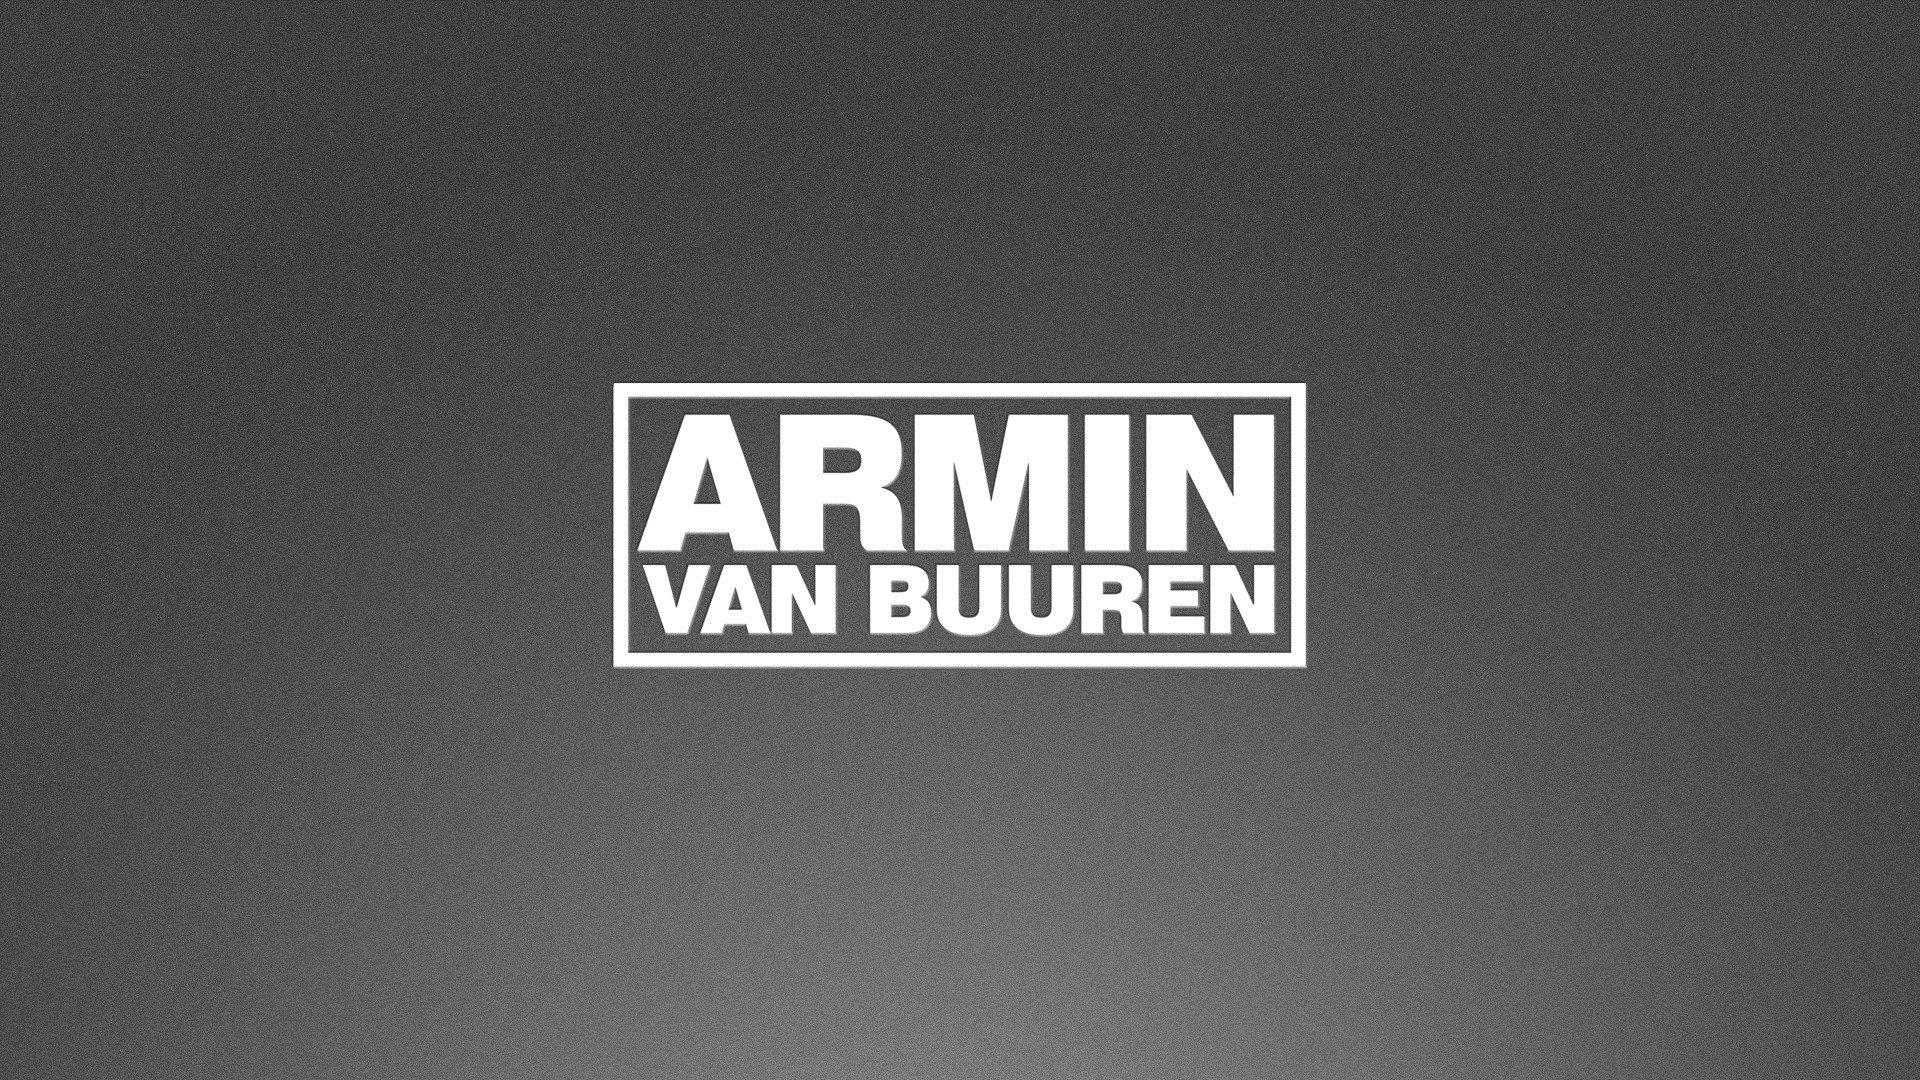 Armin Van Buuren 2018 Wallpapers - Wallpaper Cave